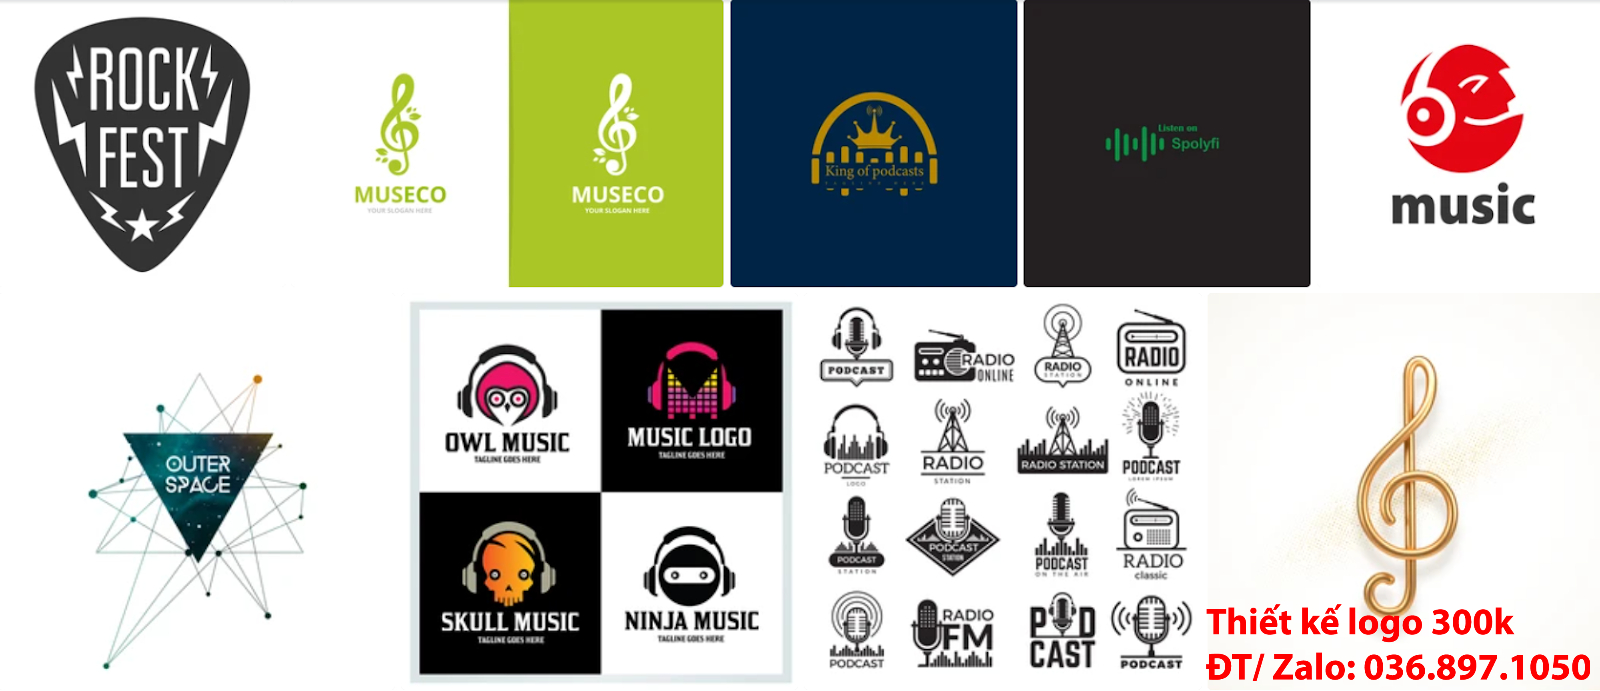 Dịch vụ tạo Mẫu logo âm nhạc đẹp miễn phí tại TpHCM uy tín chuyên nghiệp nhất